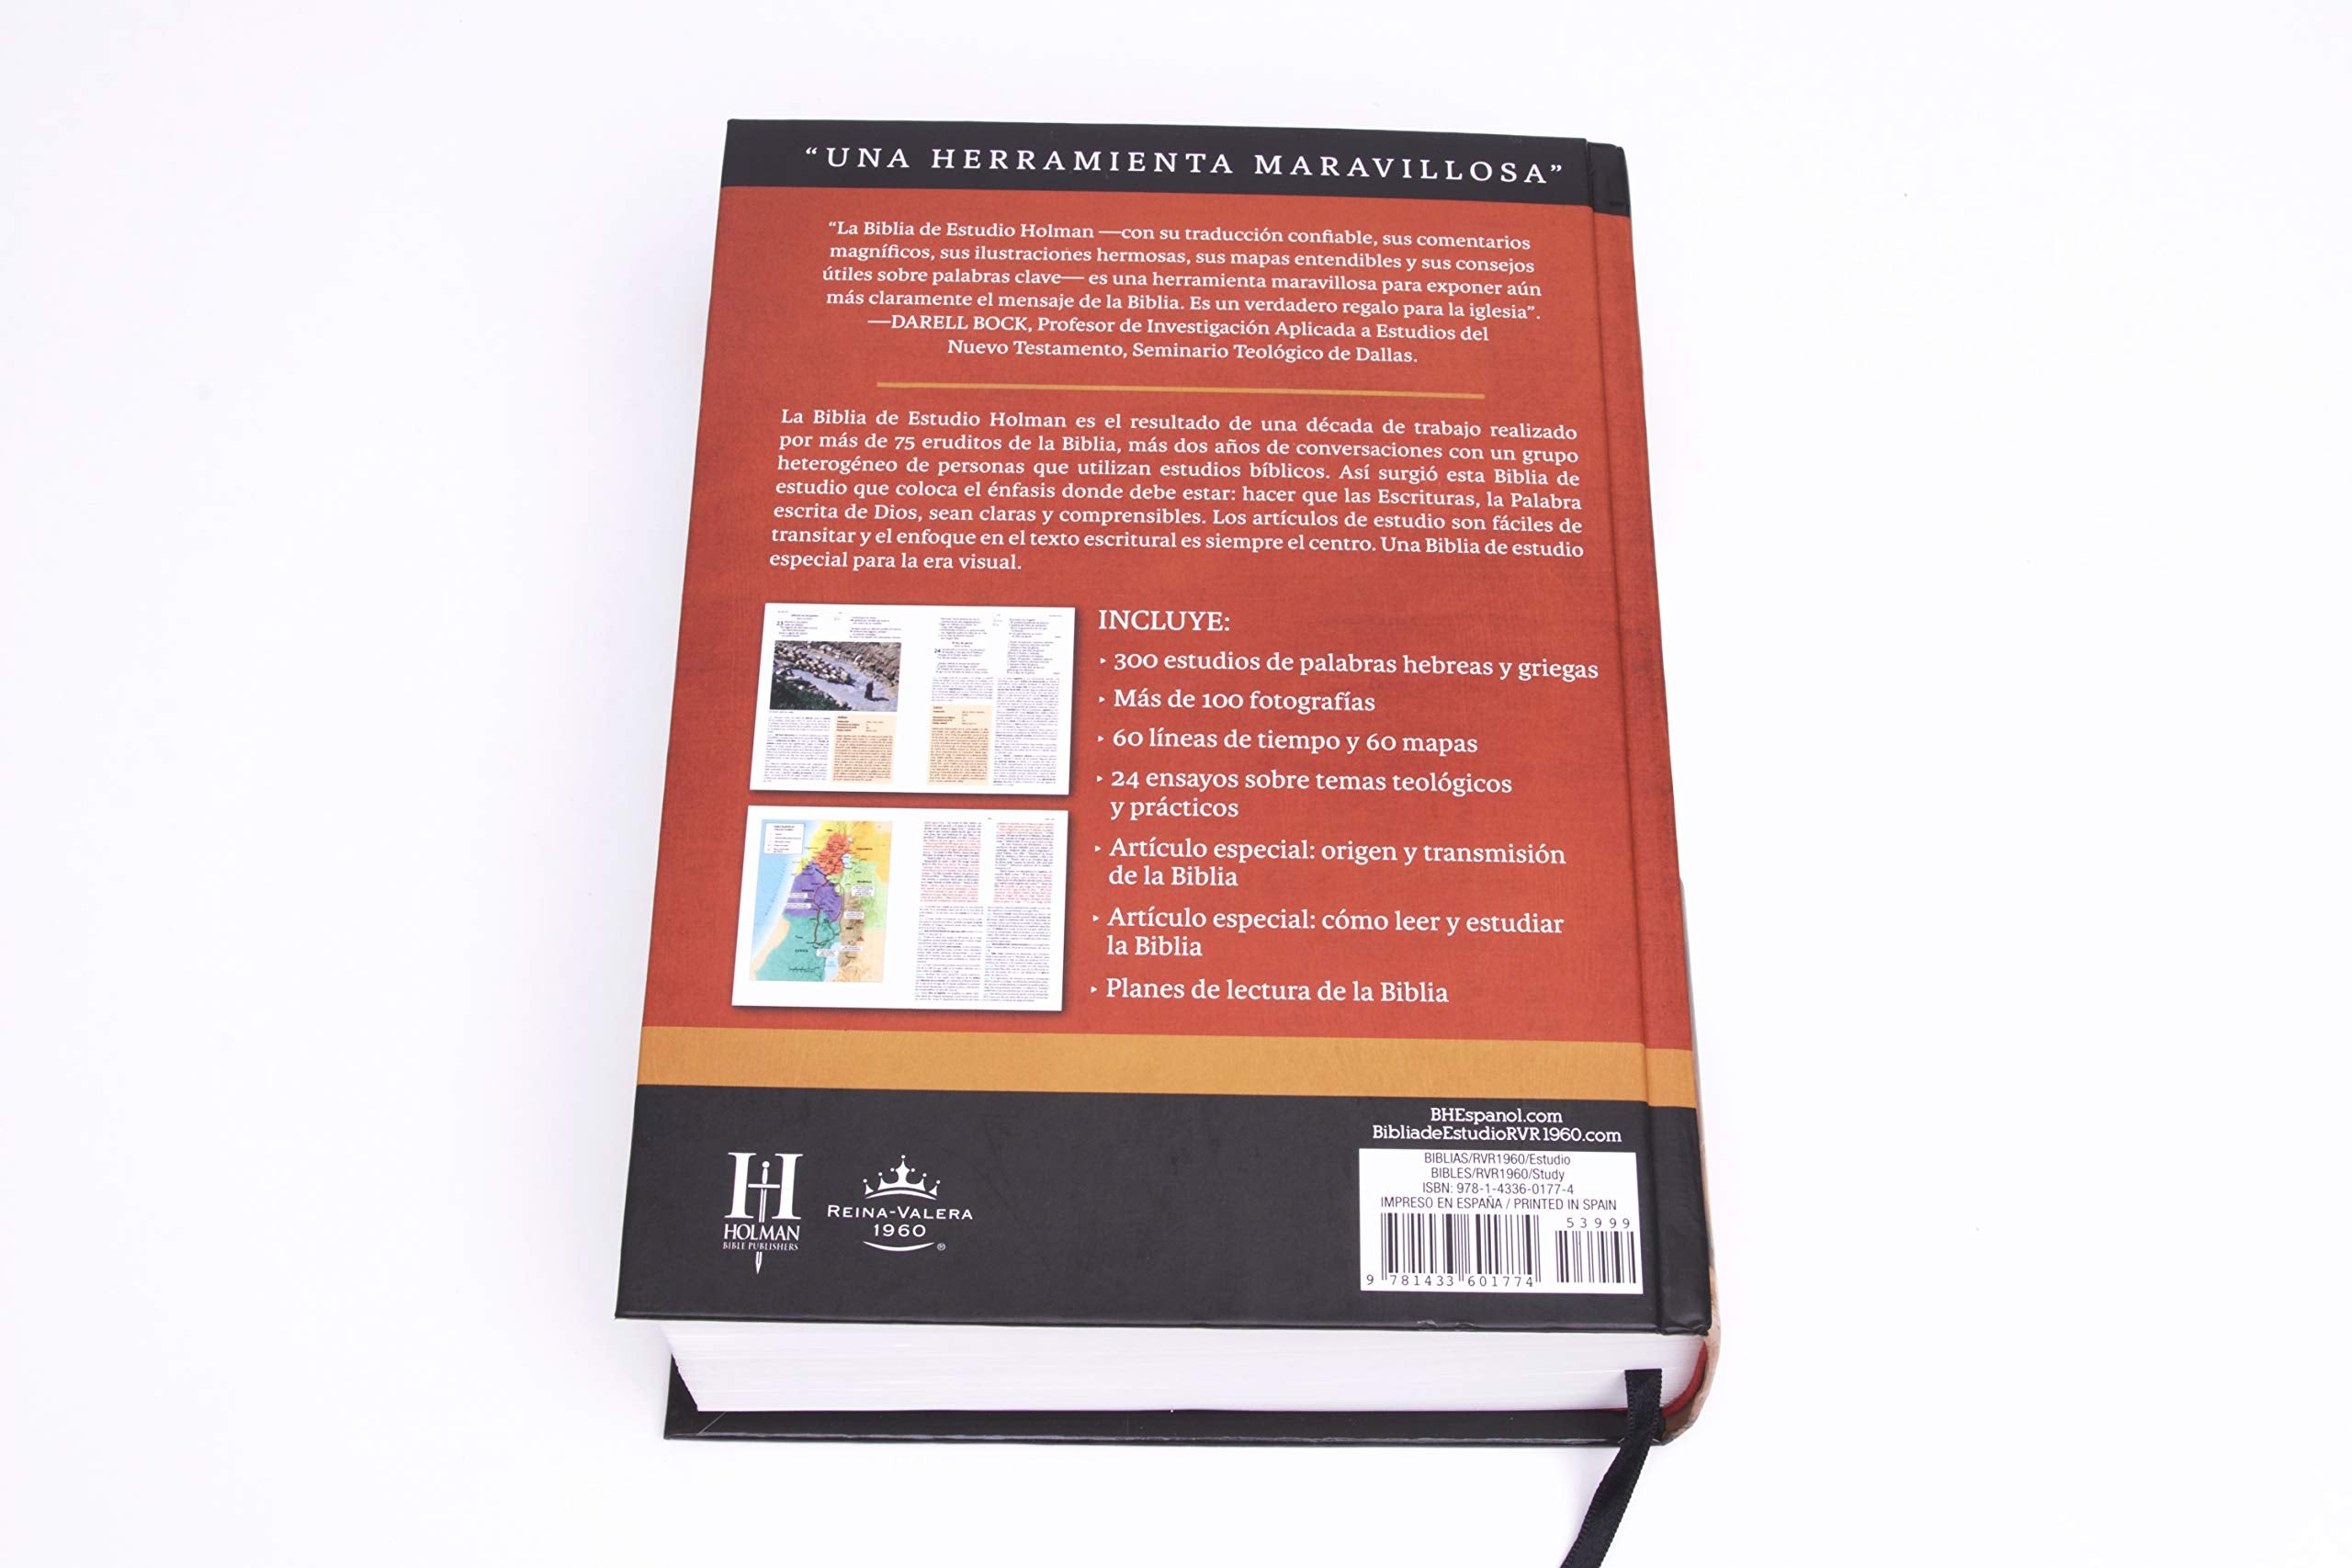 Biblia de Estudio Tapa Dura RVR60 - Librería Libros Cristianos - Biblia